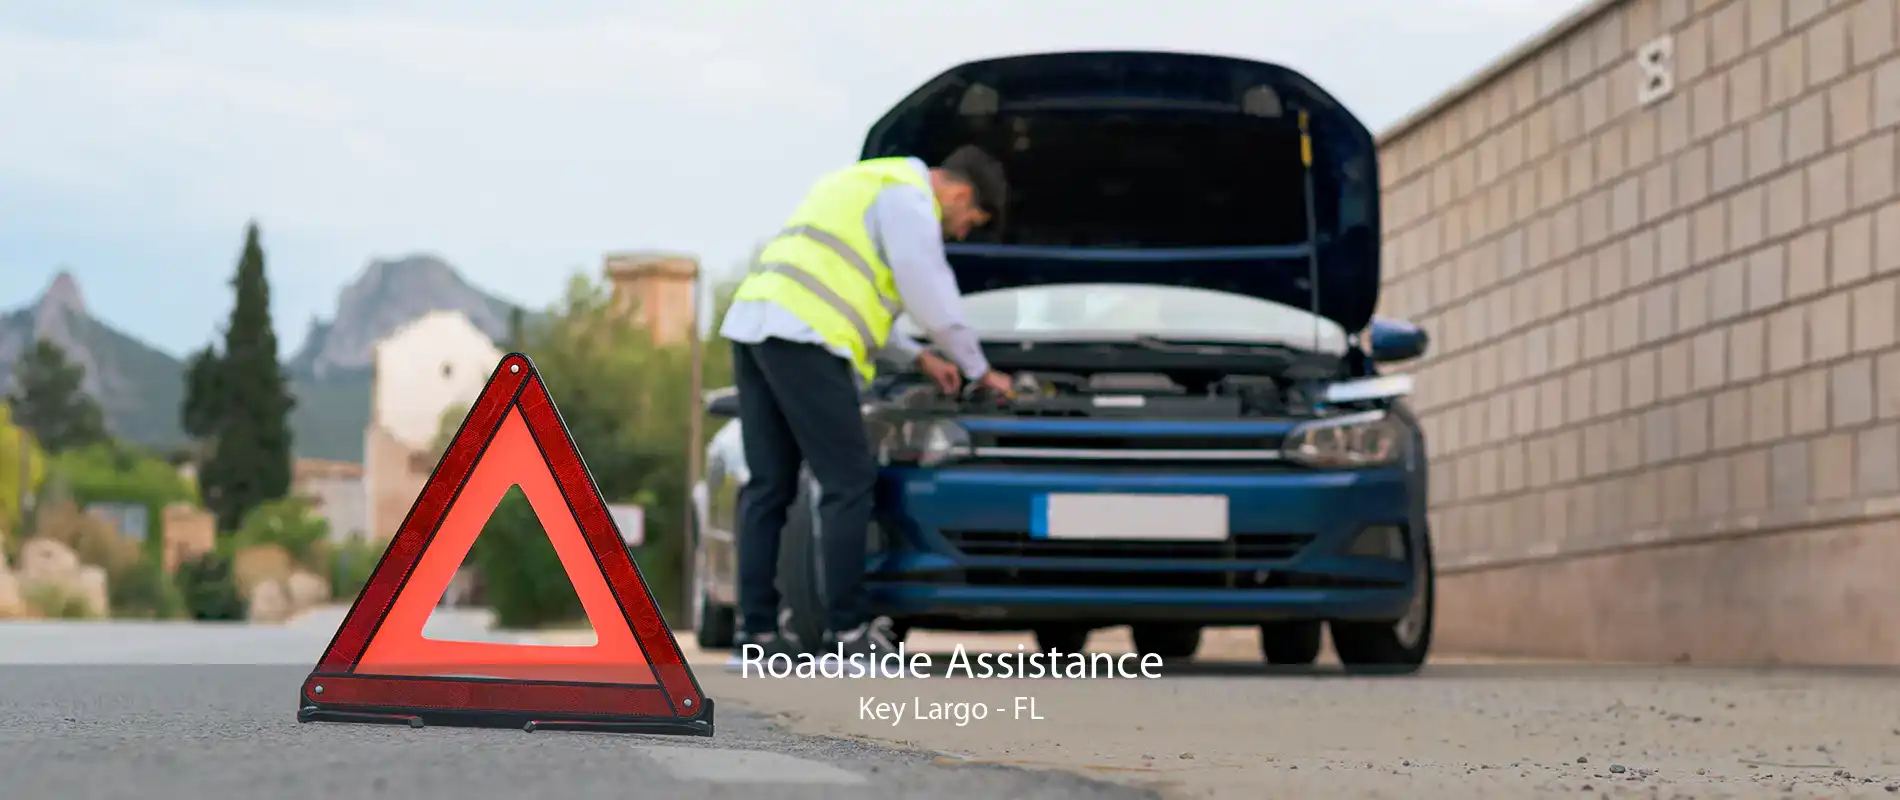 Roadside Assistance Key Largo - FL